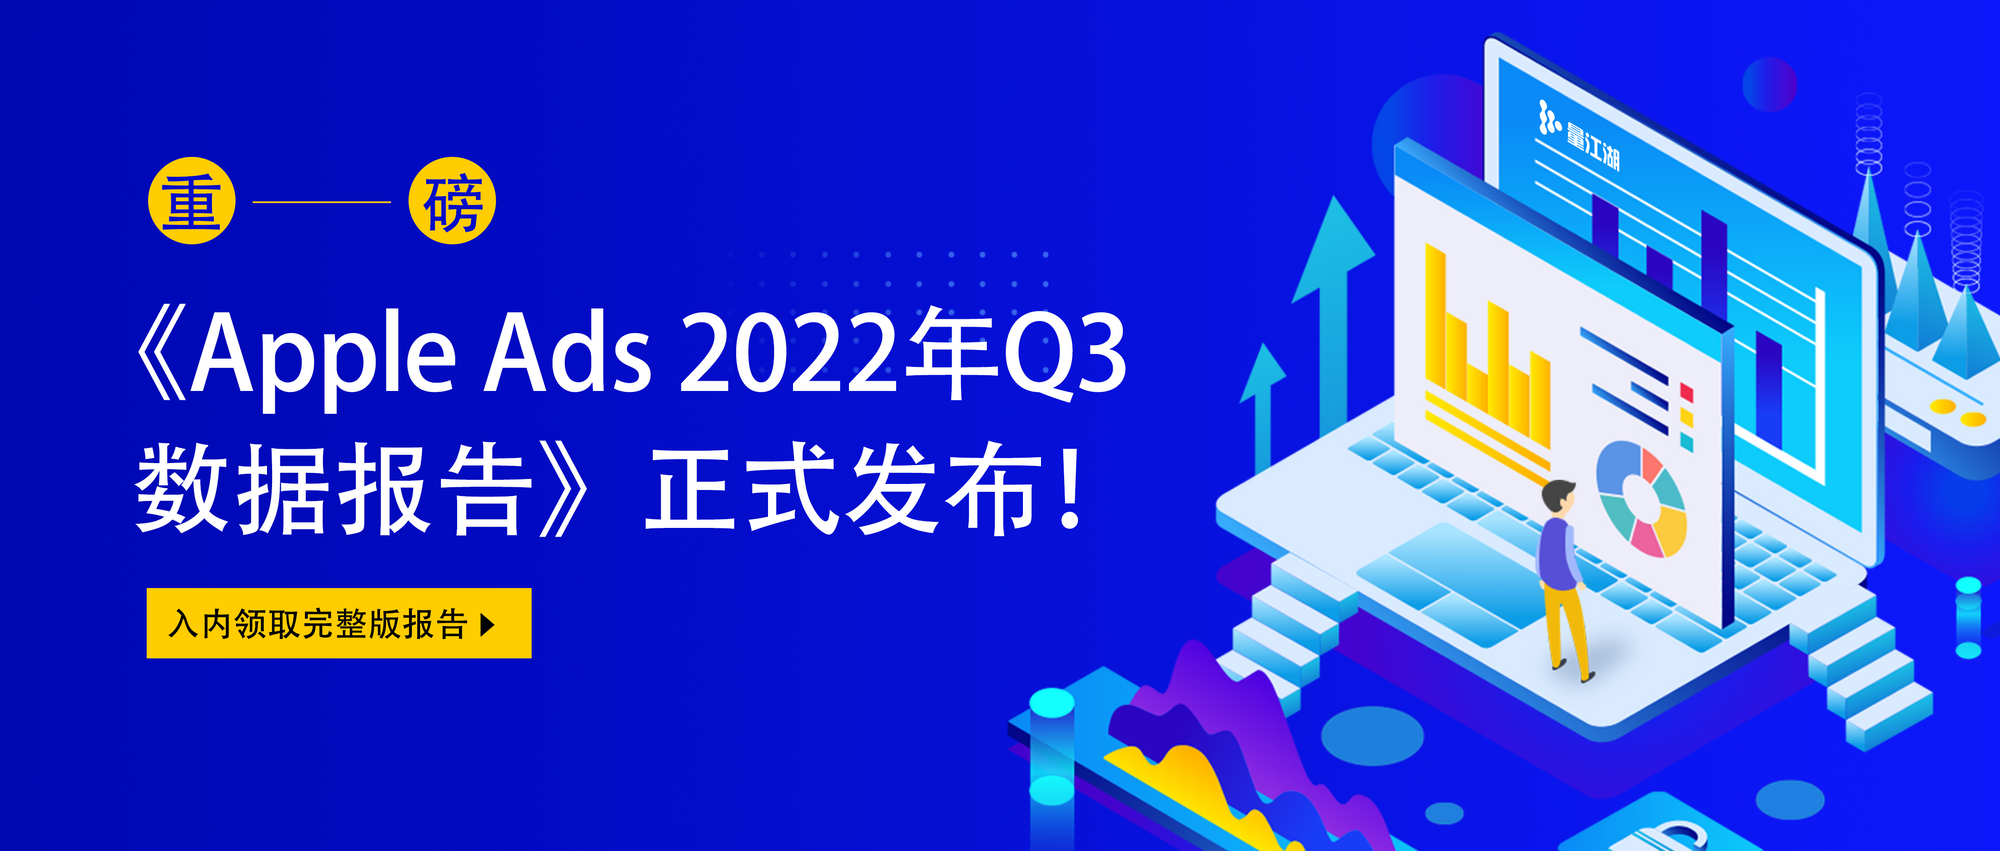 量江湖正式发布《Apple Ads 2022年 Q3 数据报告》